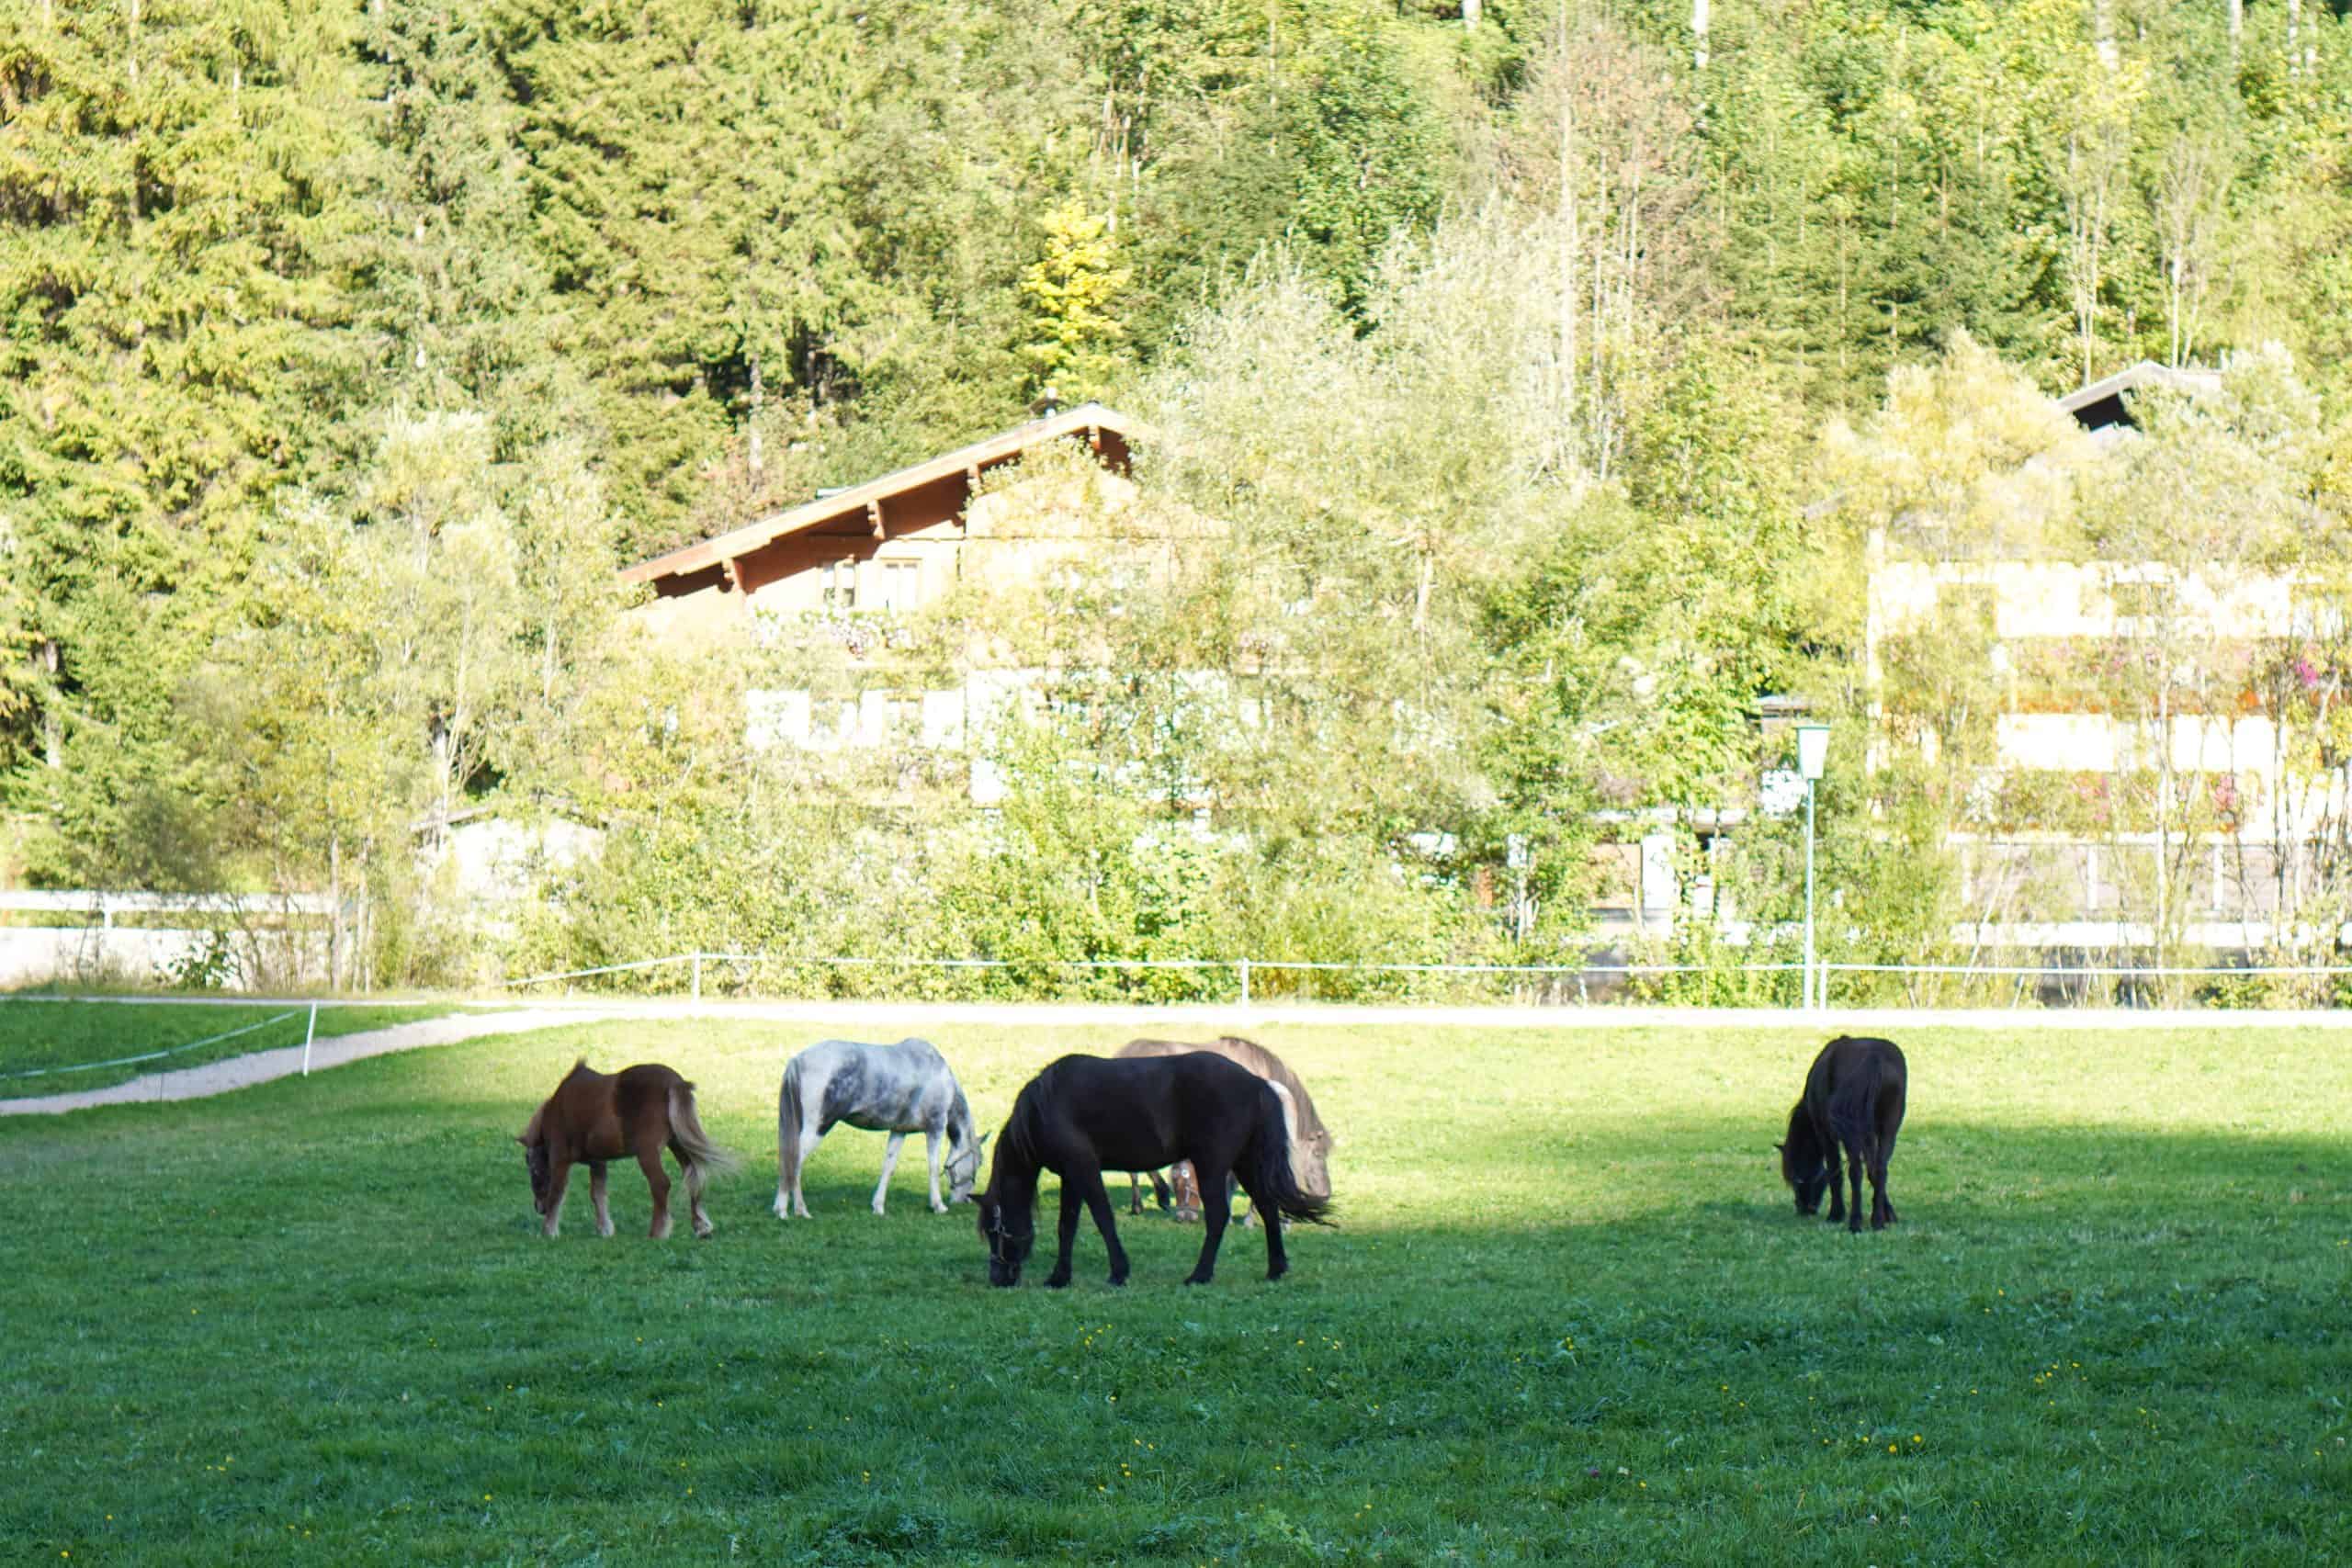 Einige Pferde grasen zusammen auf einer Wiese.